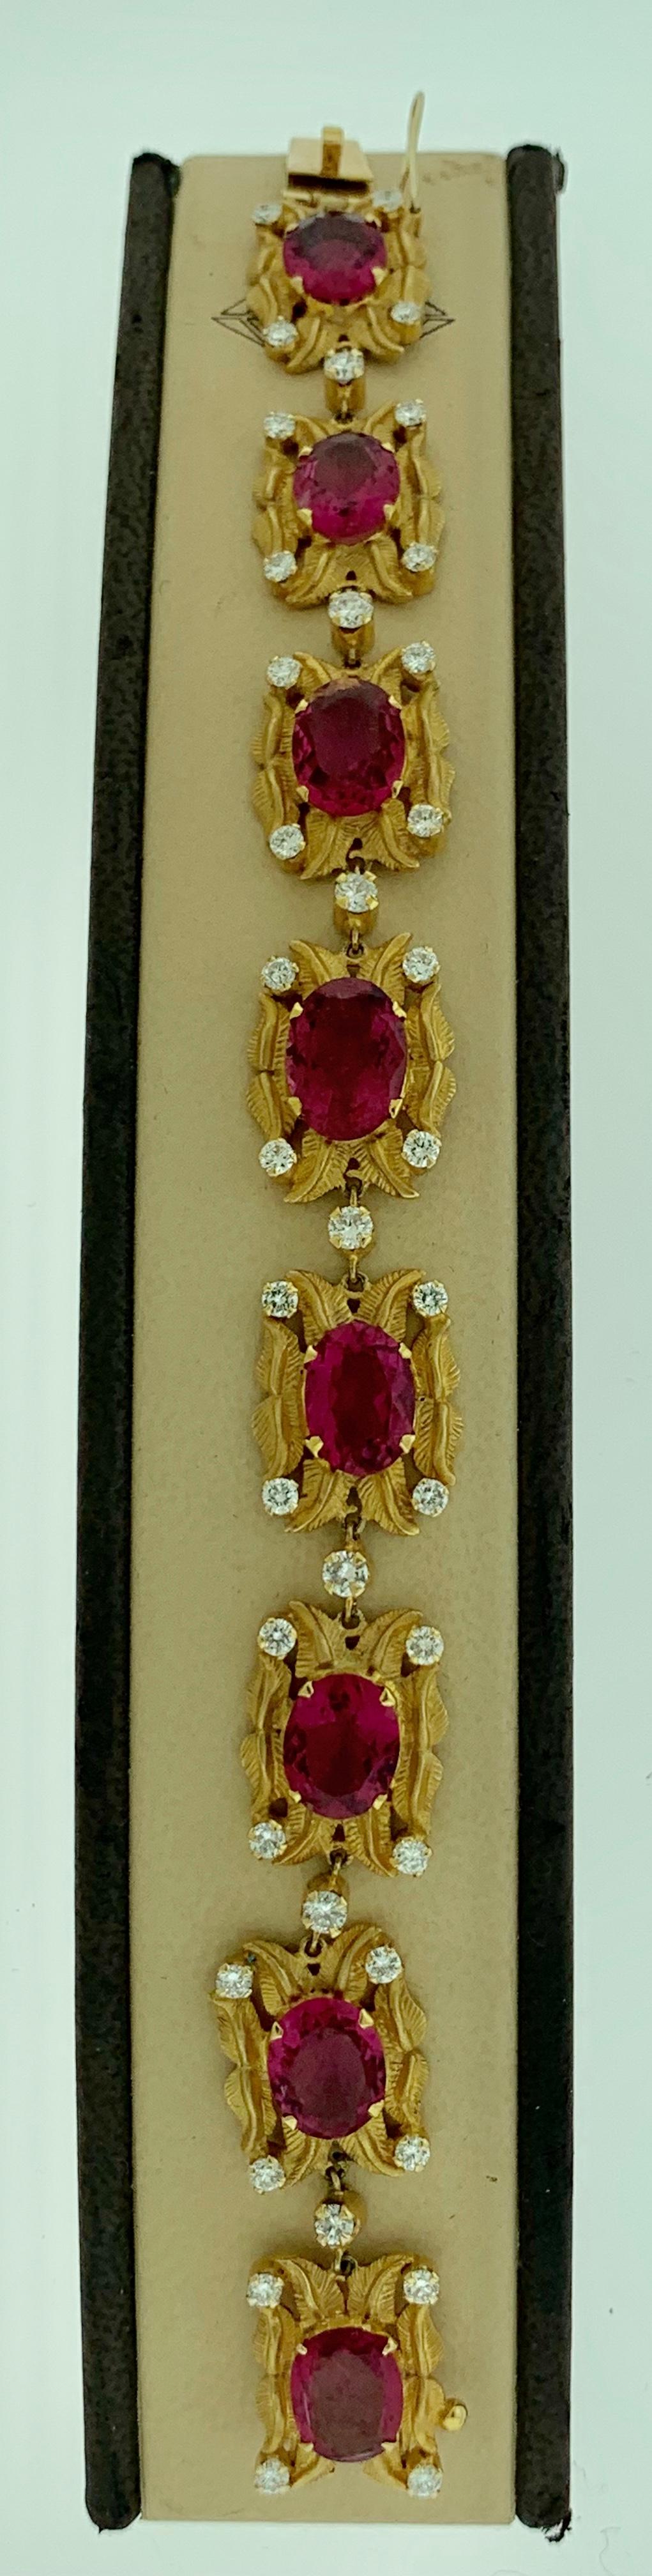 Oval Cut 24 Carat Pink Tourmaline and 2.75 Carat Diamond Bracelet  18 Karat Yellow Gold For Sale